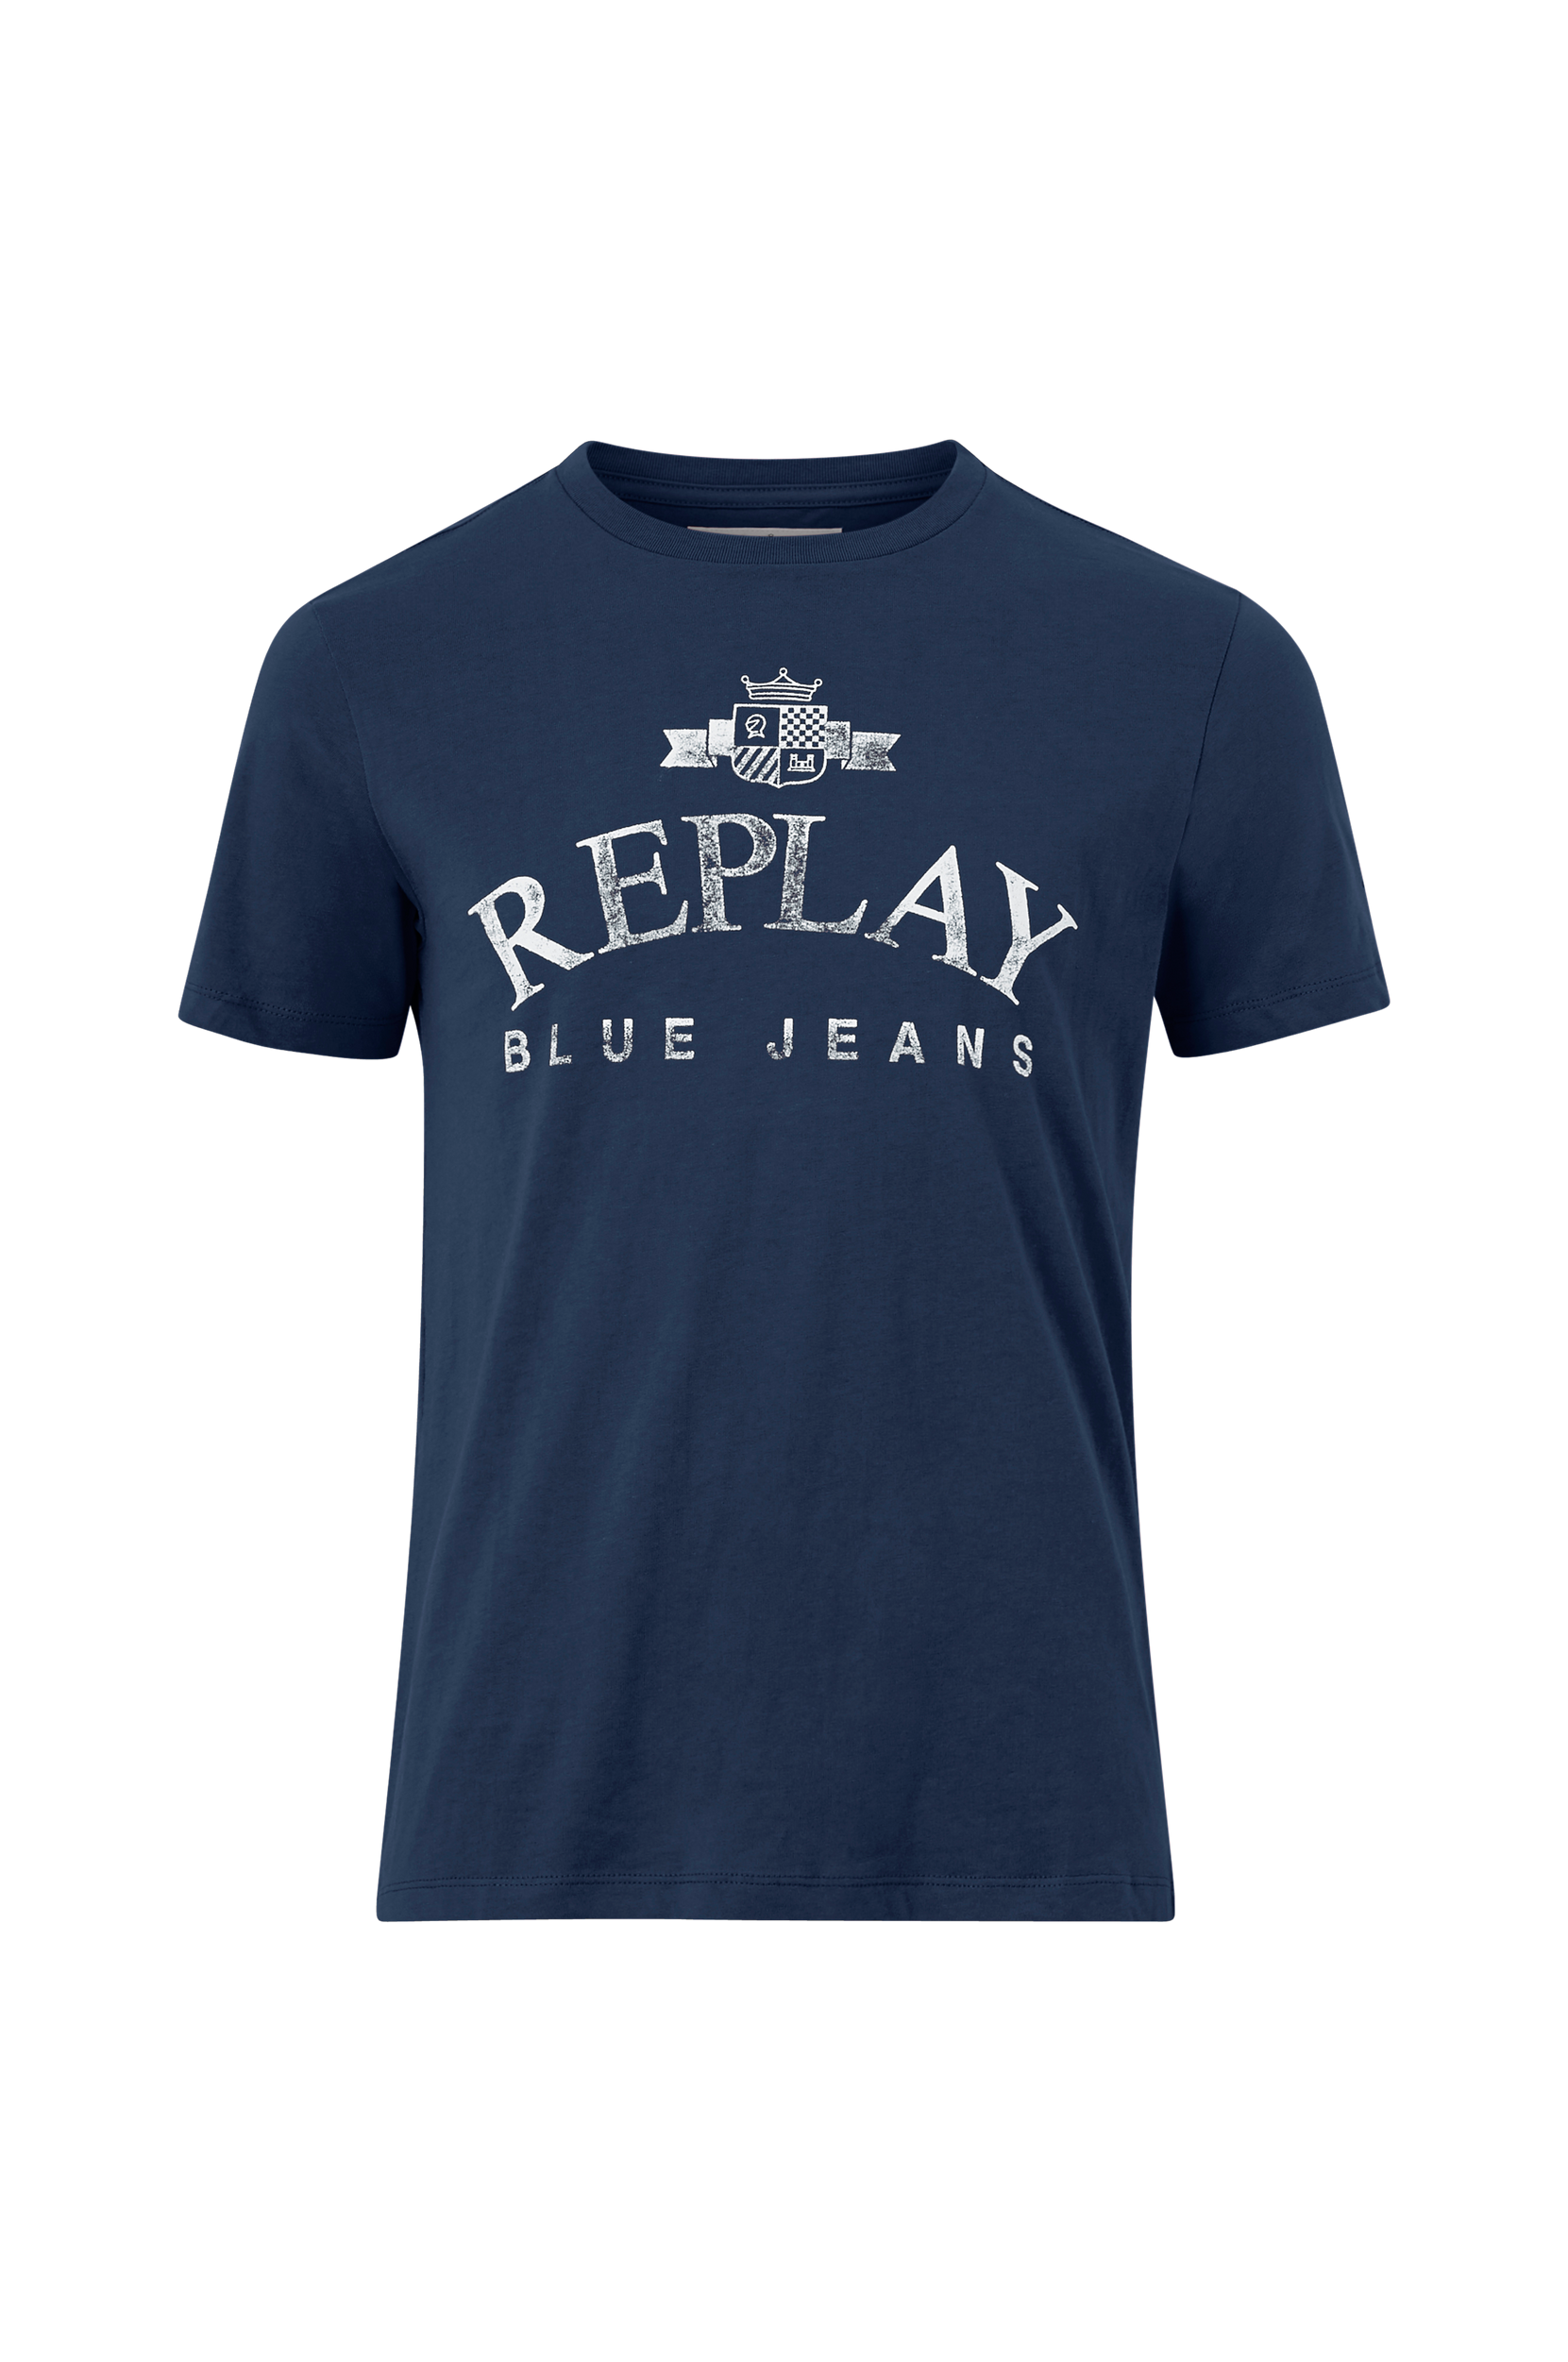 T-paita, jossa vintagepainatus, Replay